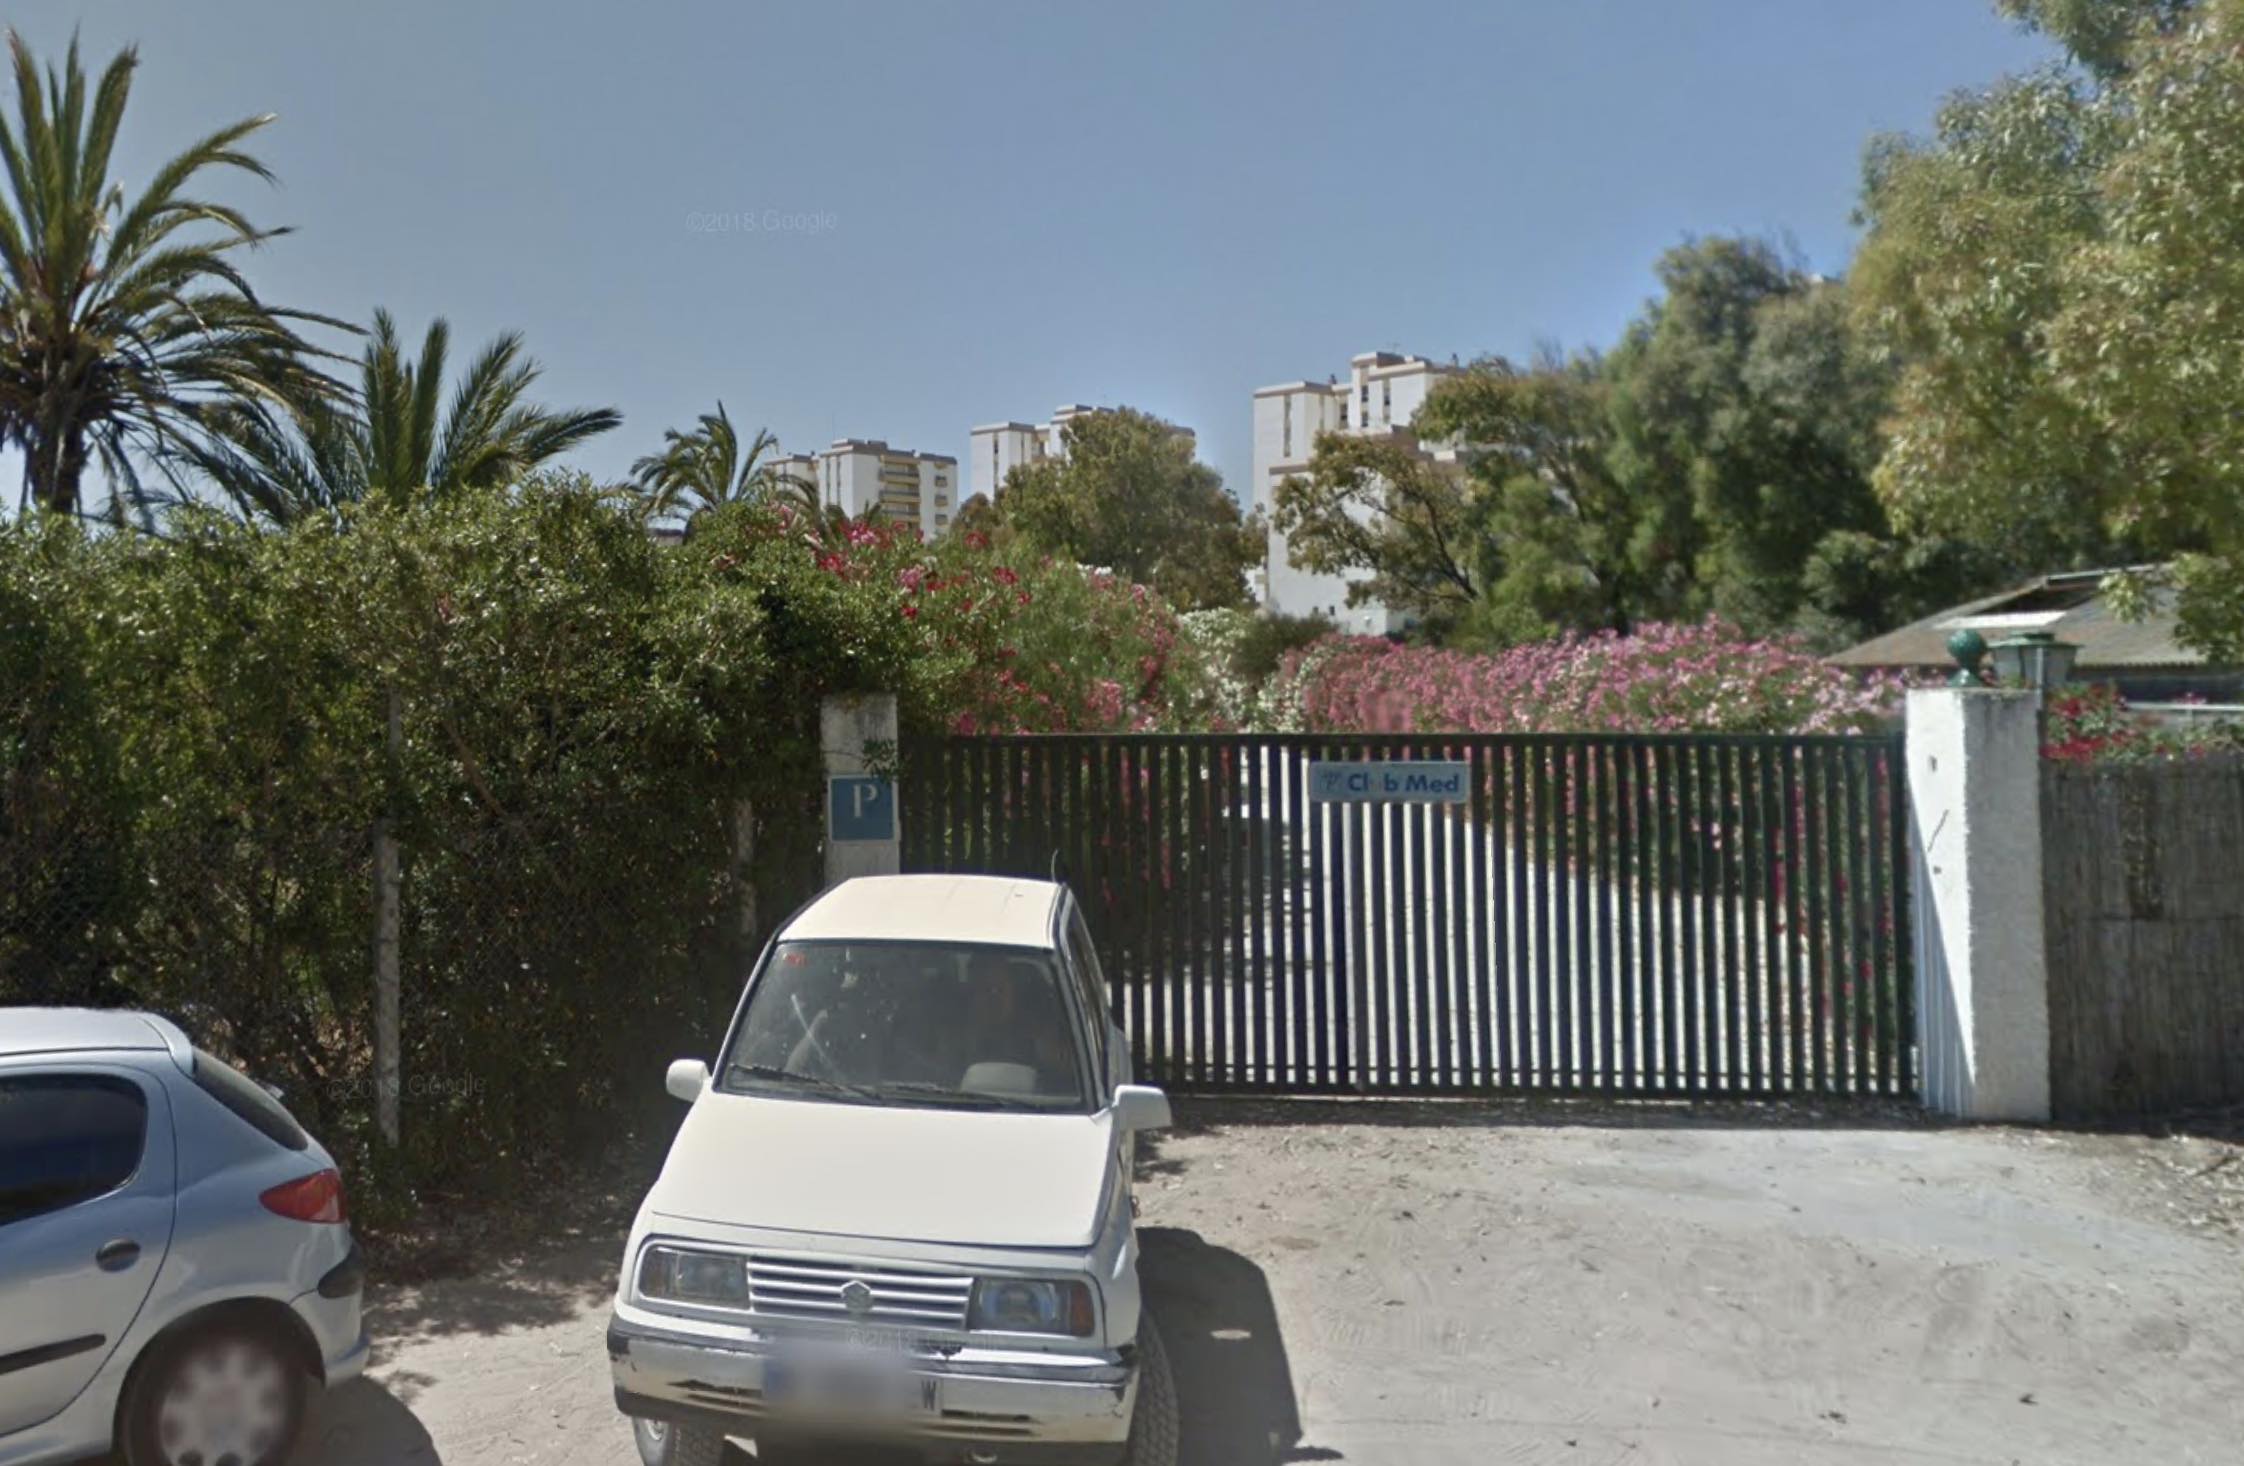 Zona del Club Med, donde iba a levantarse el nuevo hotel y los apartamentos turísticos, en una imagen de Google Maps.